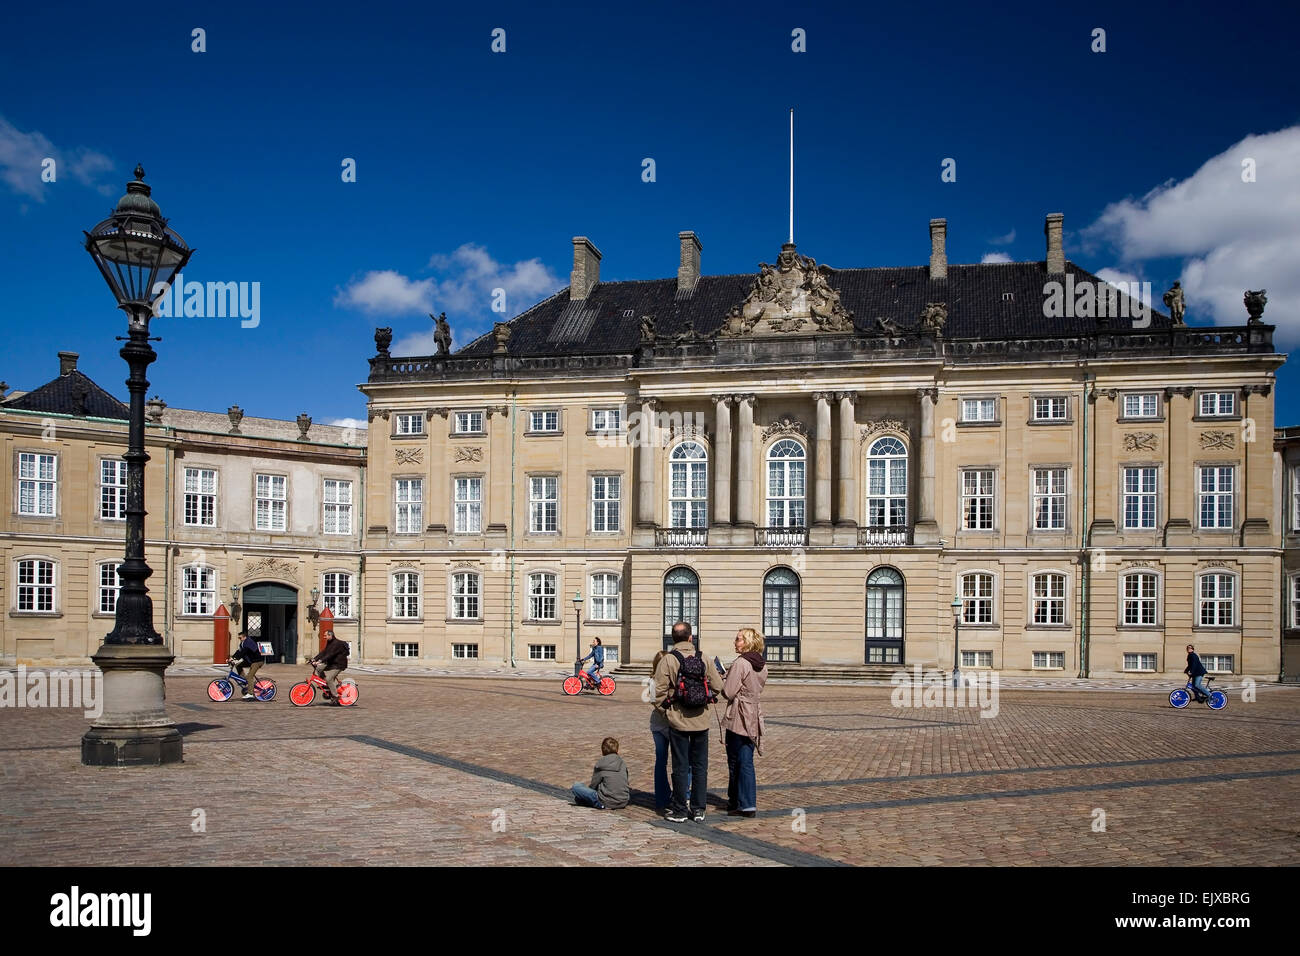 The Royal Palace Amalienborg in Copenhagen Stock Photo